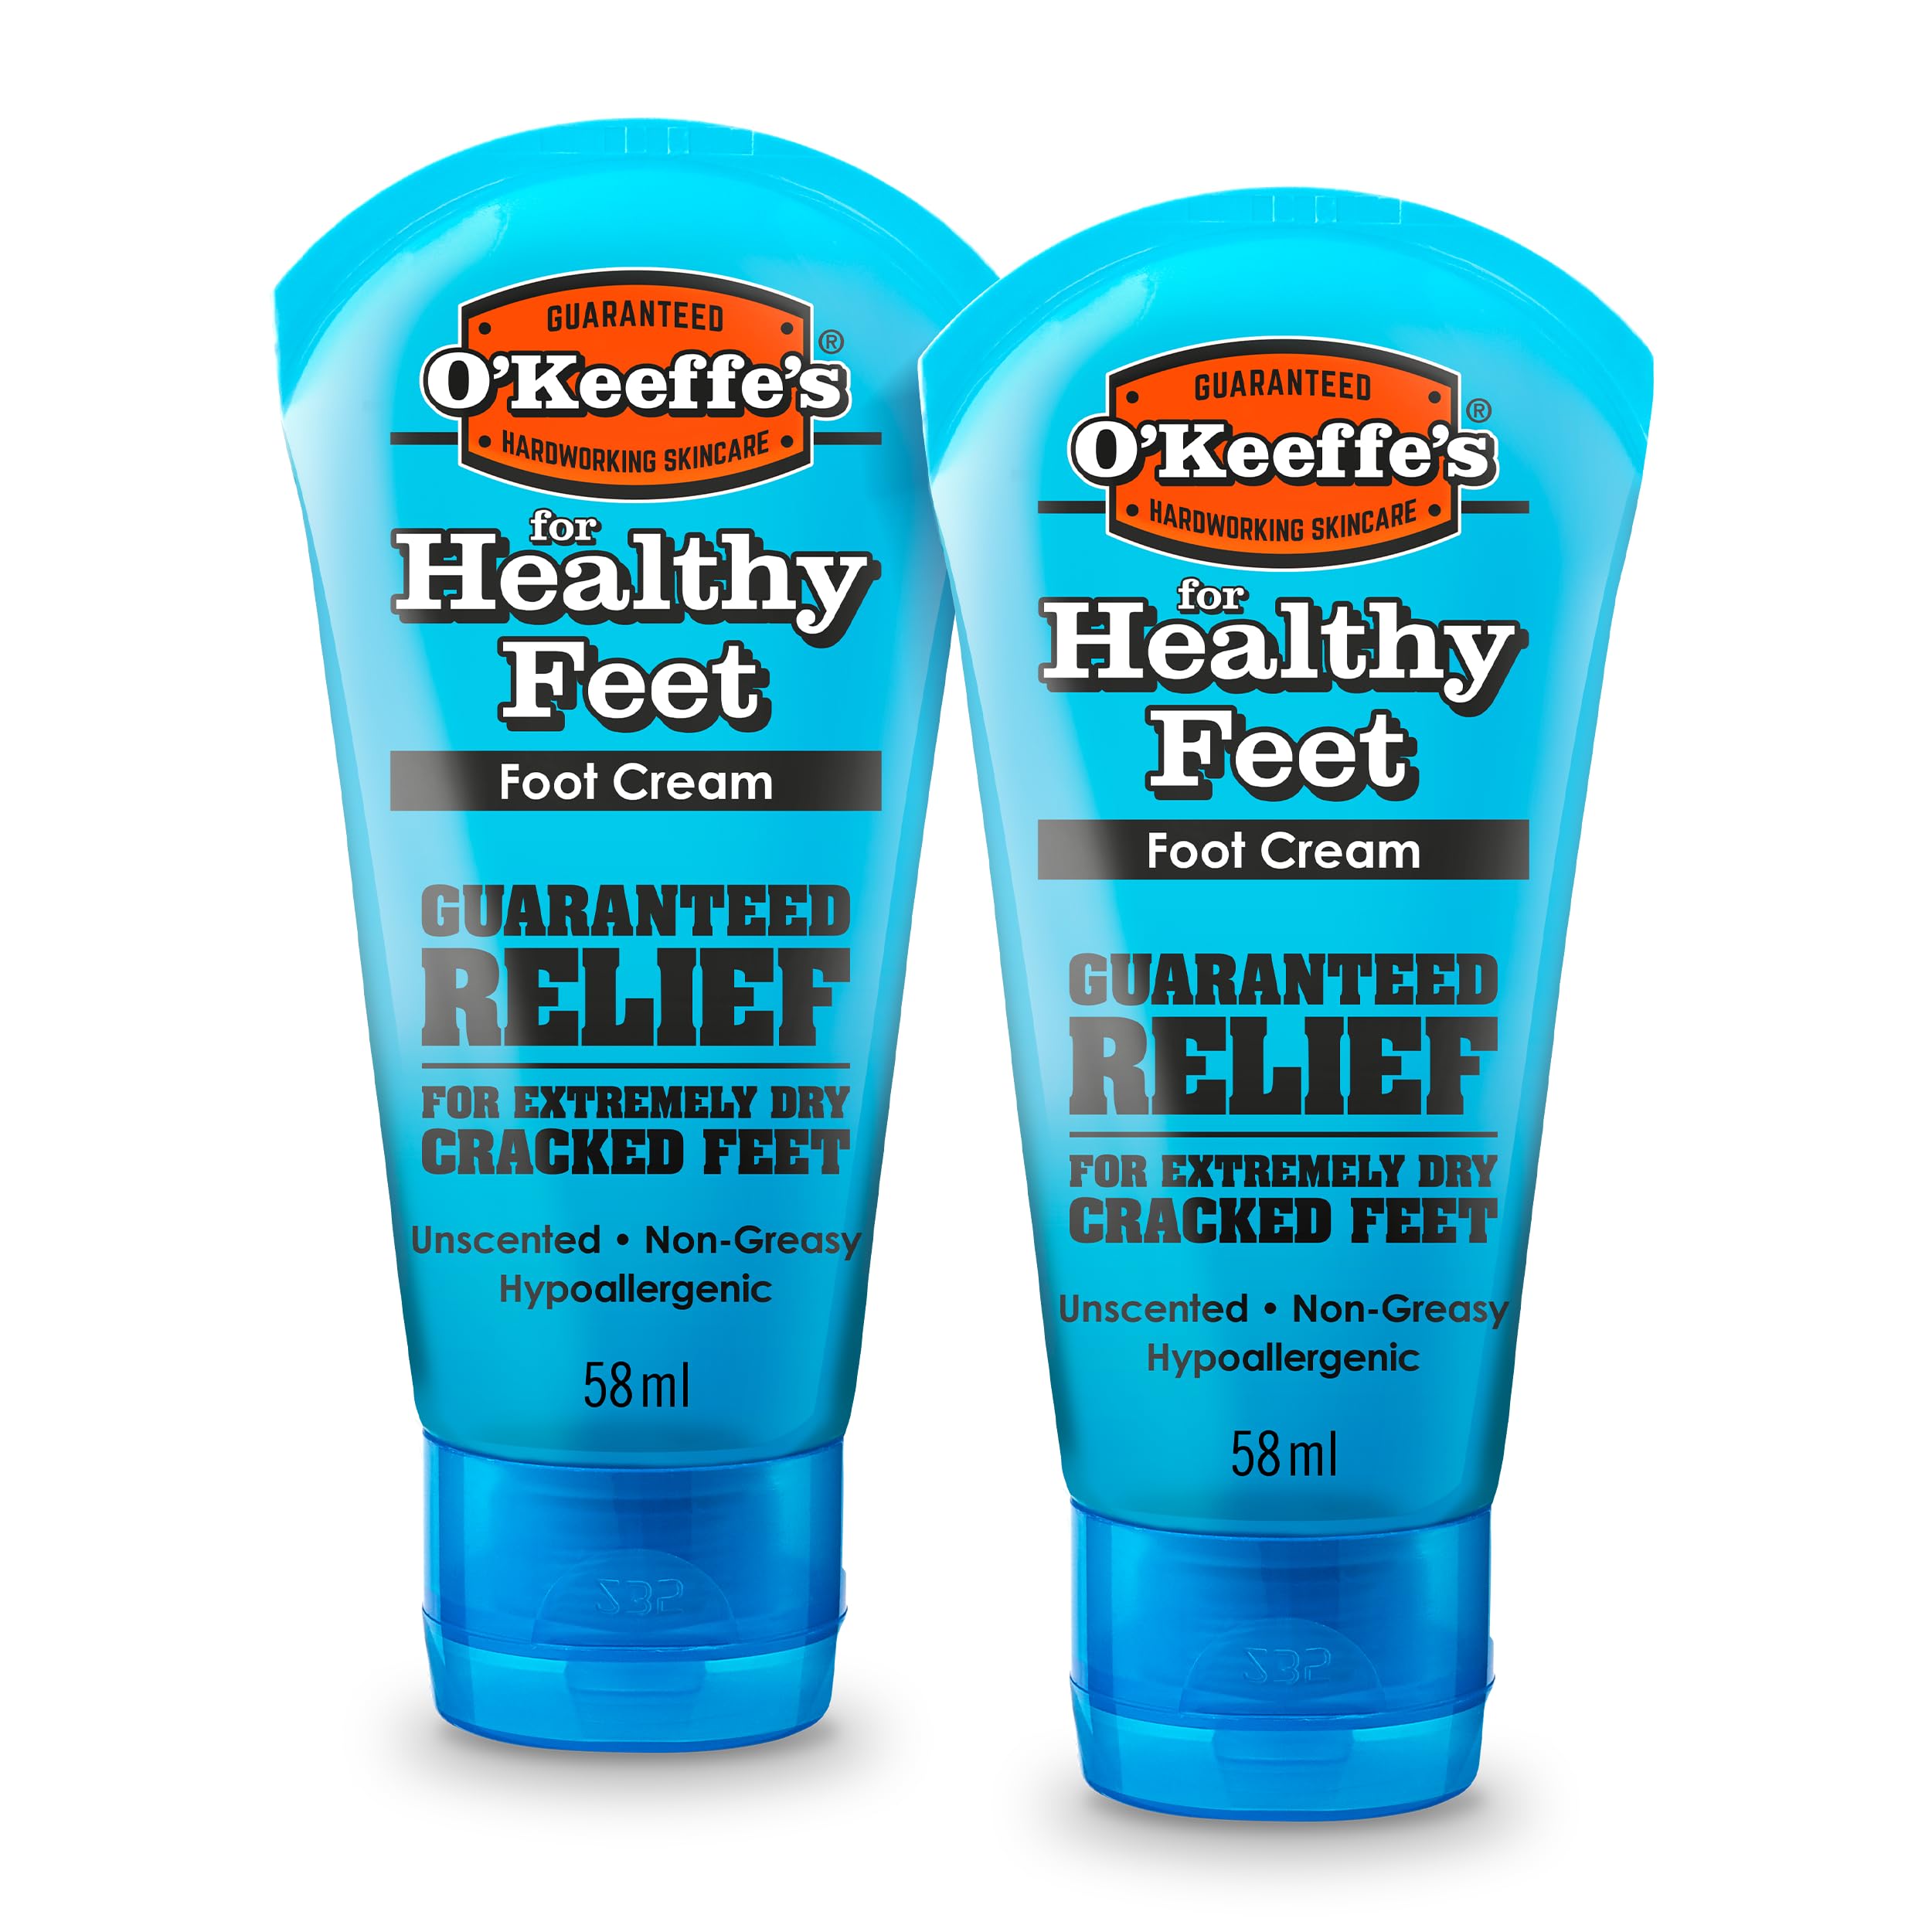 O'Keeffe's Healthy Feet 58 ml (2er-Pack) - Fußcreme für extrem trockene, rissige Füße | steigert sofort den Feuchtigkeitsgehalt, schafft eine Schutzschicht und verhindert Feuchtigkeitsverlust